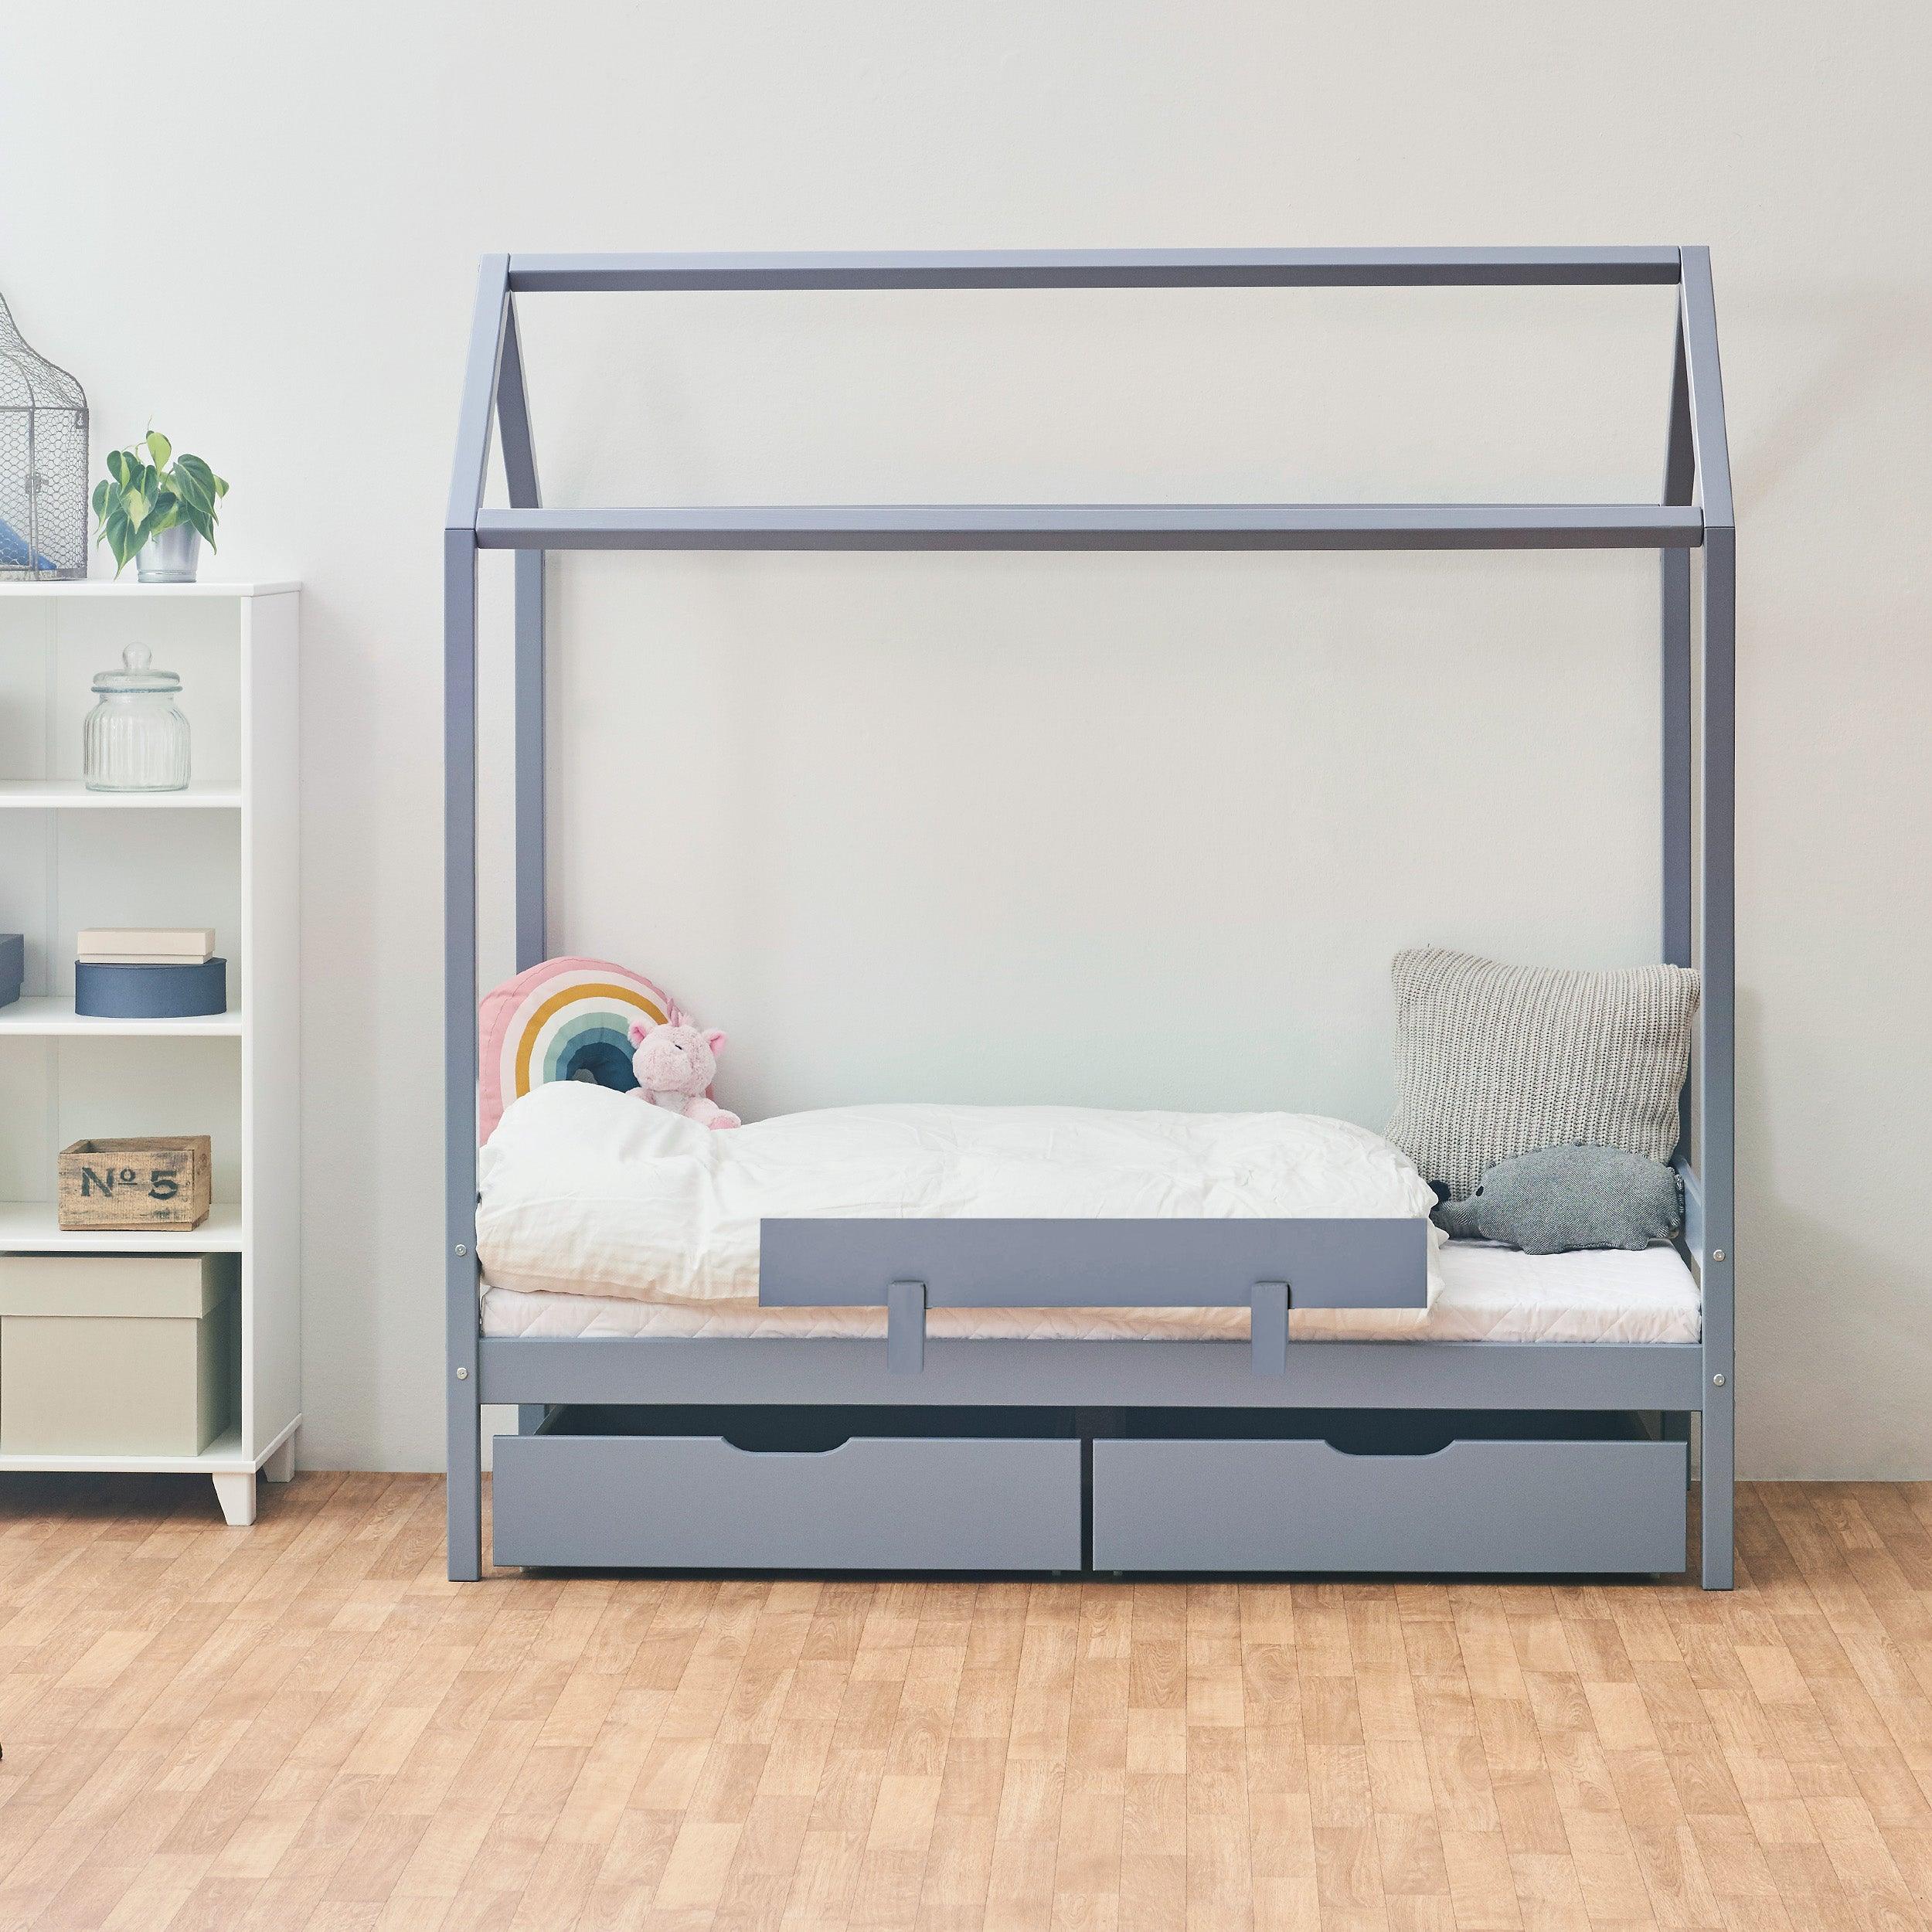 Outlet: ECO Comfort huisbed met bedlades & bedhek, blauw-grijs